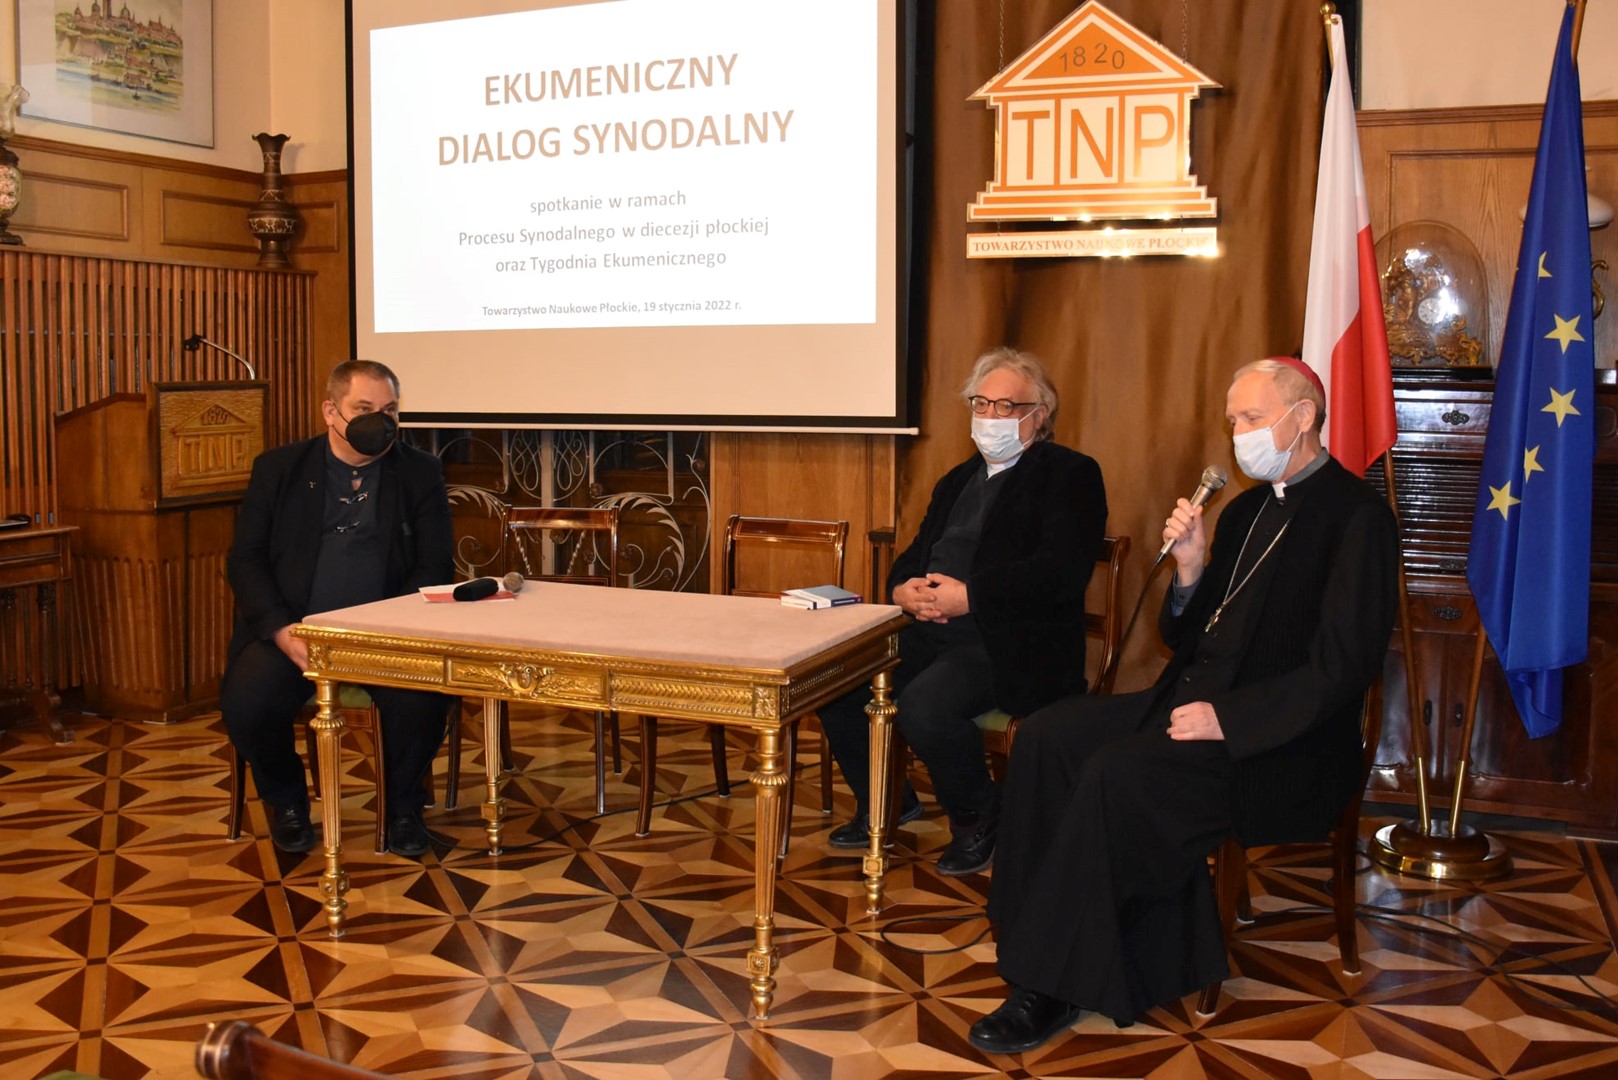 Ekumeniczny dialog synodalny w Towarzystwie Naukowym Płockim